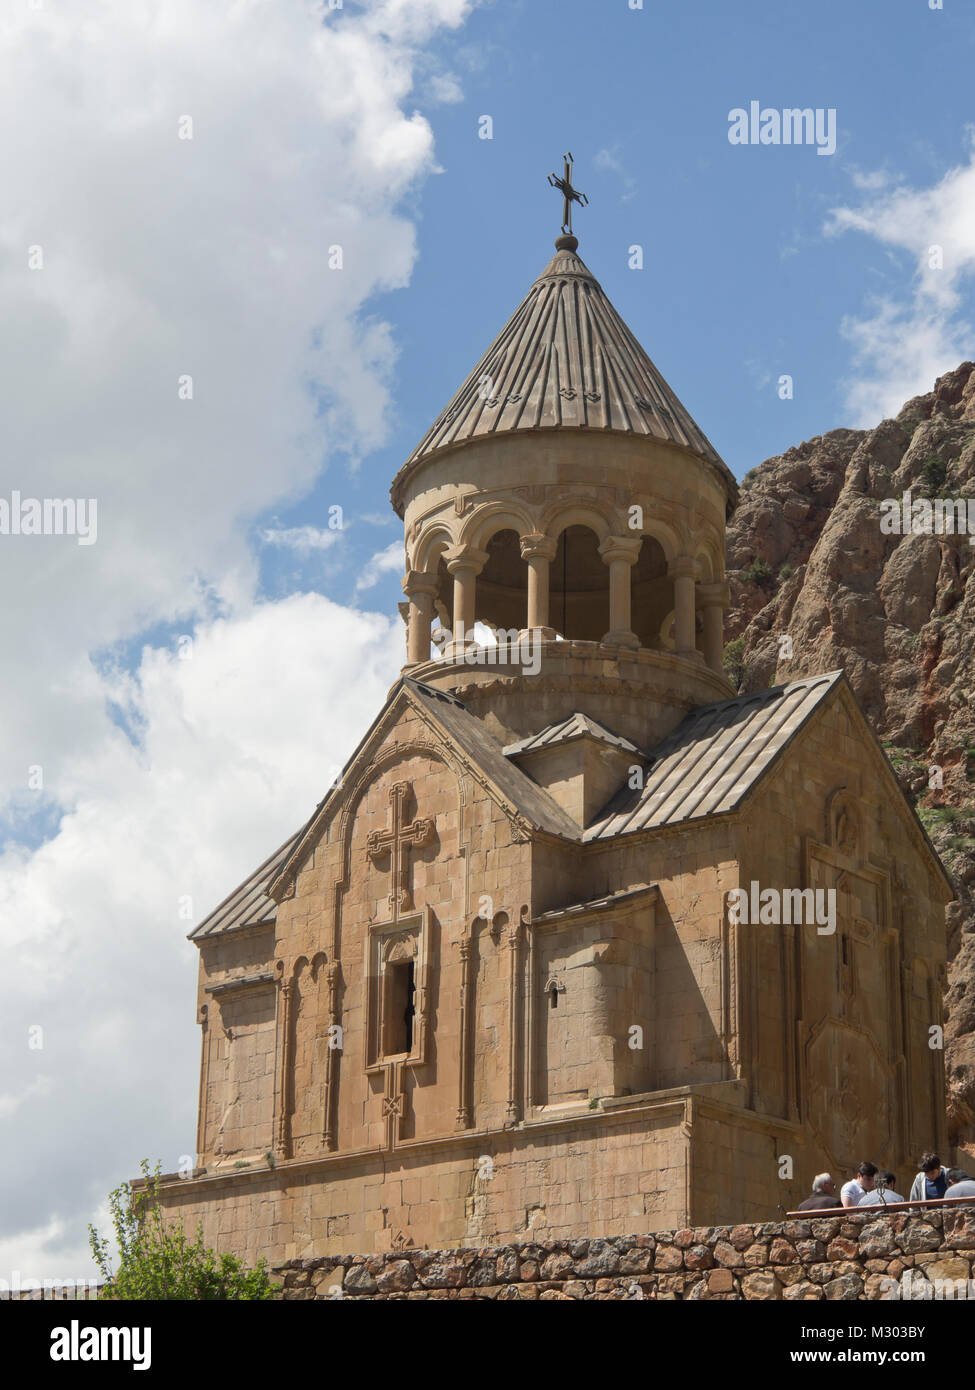 Monasterio Noravank en el sur de Armenia, la Iglesia Surb Astvatsatsin en un entorno espectacular contra los acantilados de la quebrada Zangezur Foto de stock